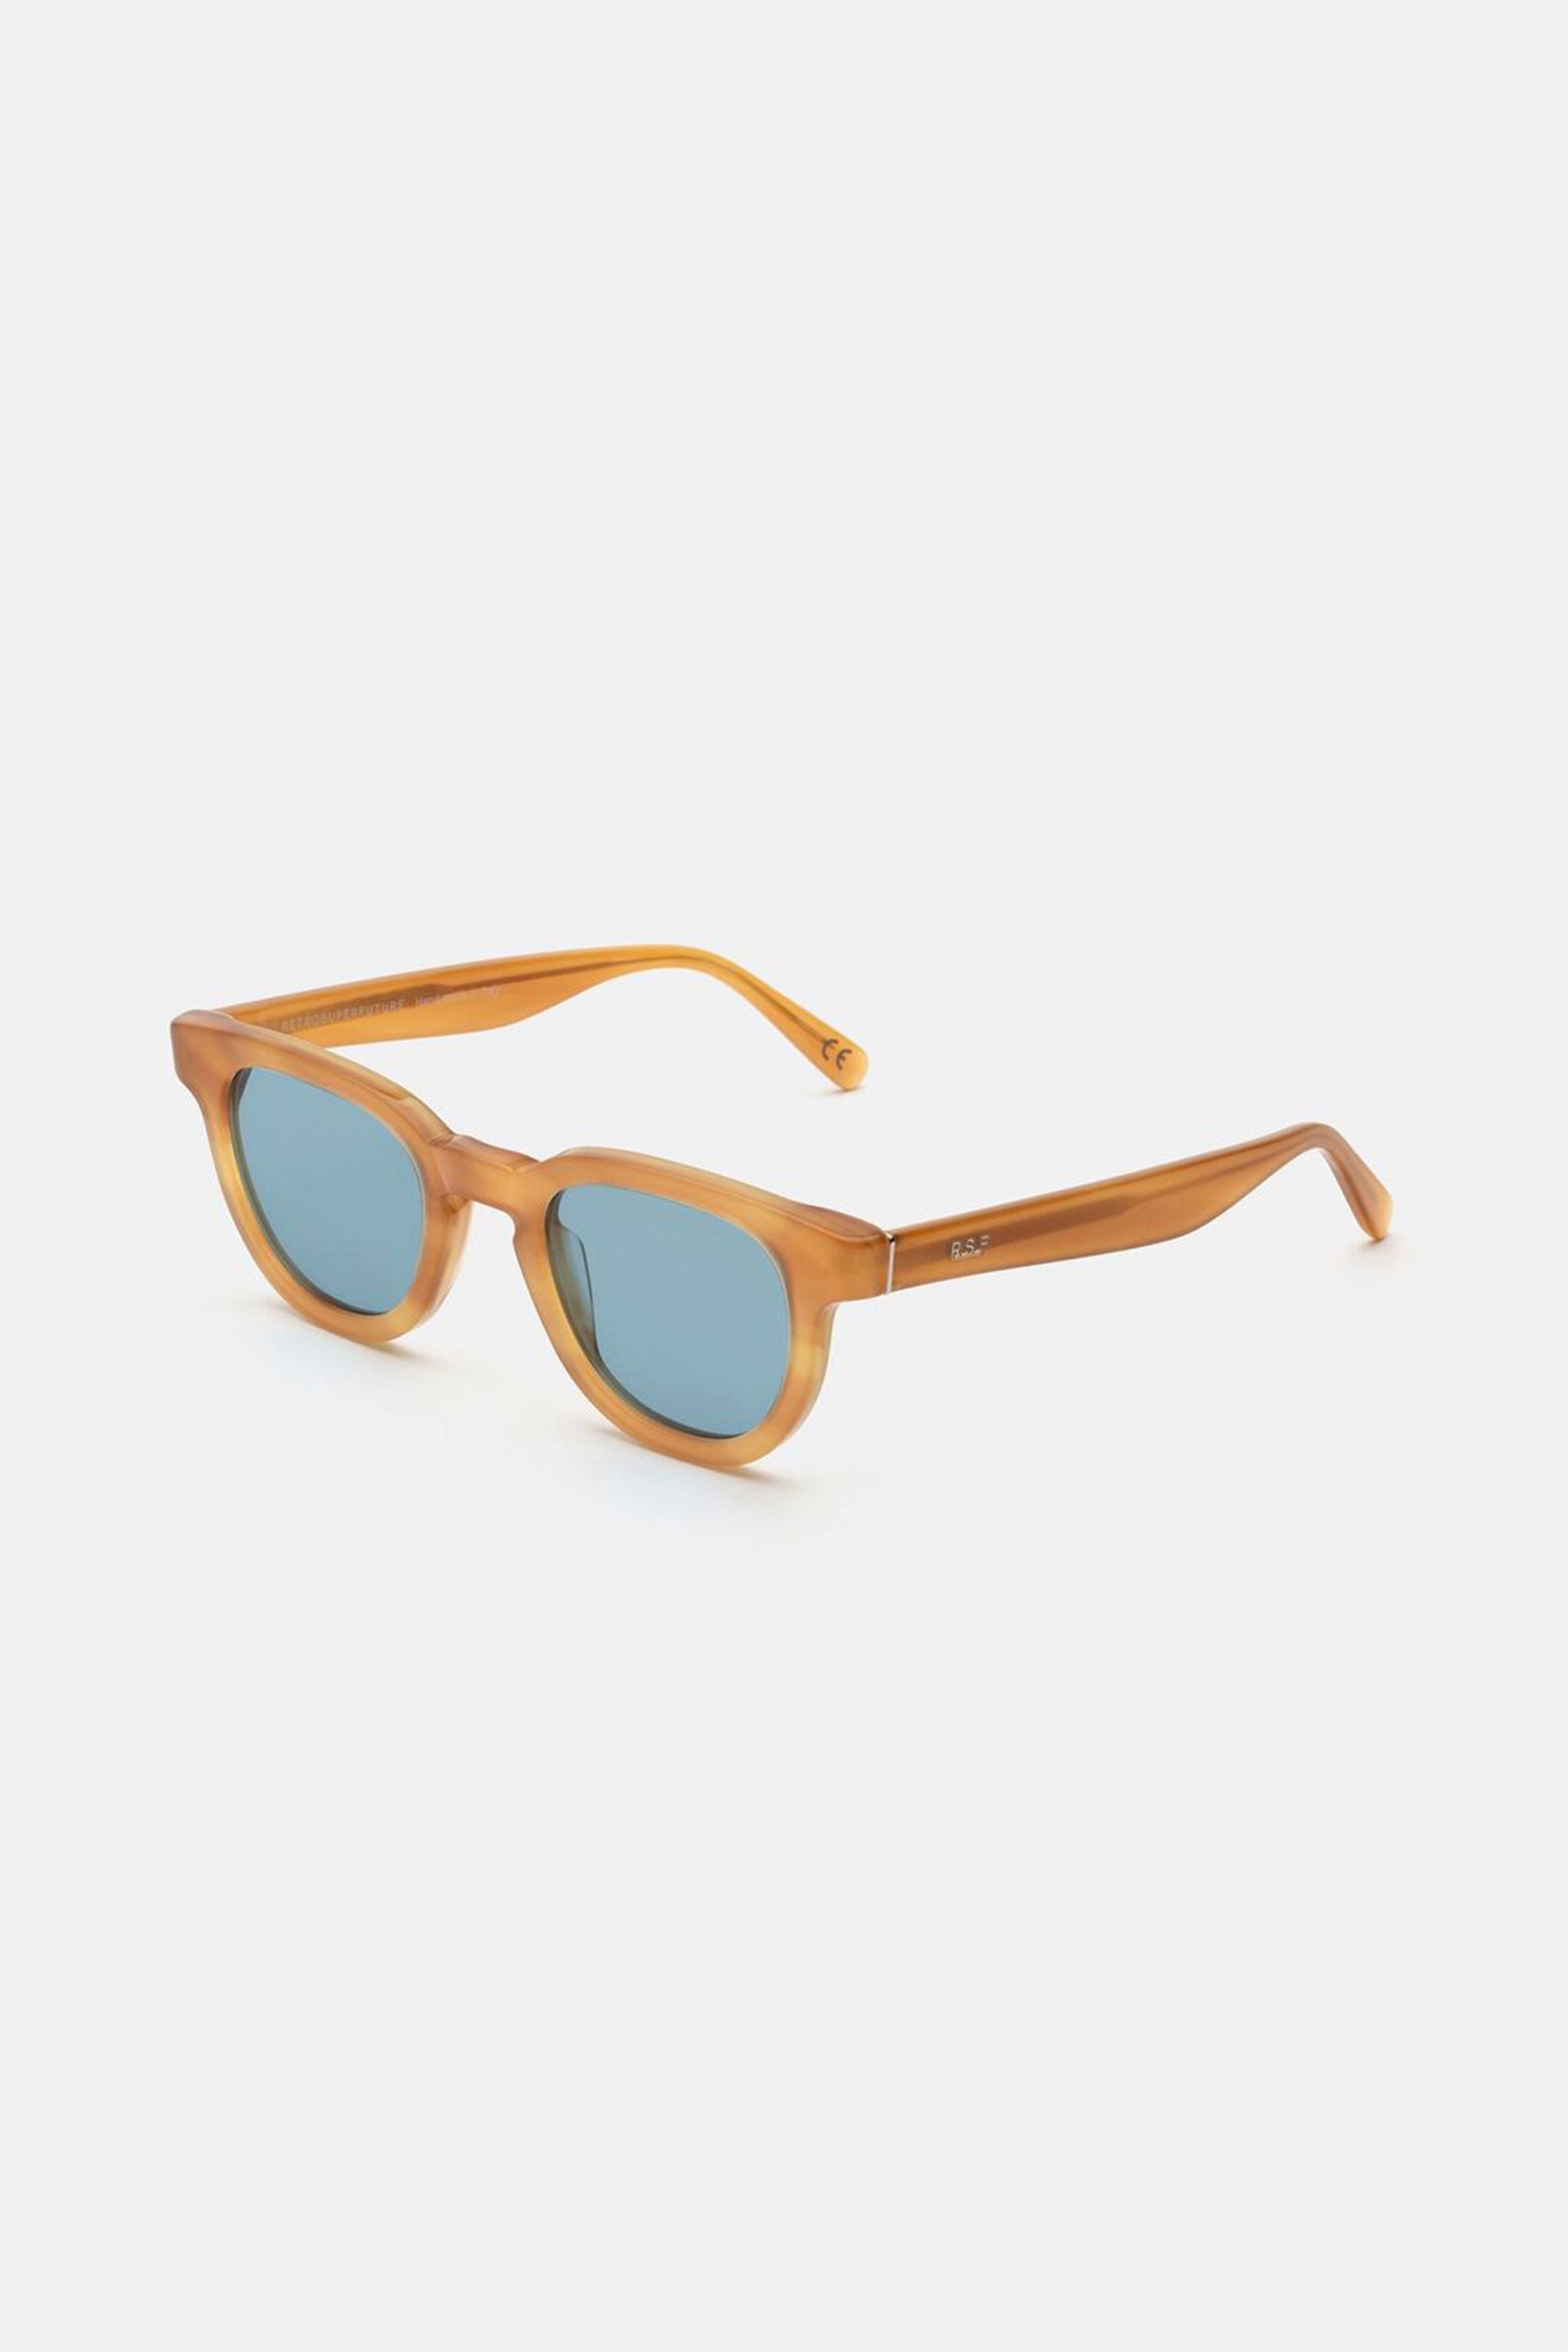 Retrosuperfuture certo 3627 yellow round sunglasses - Eyewear Club